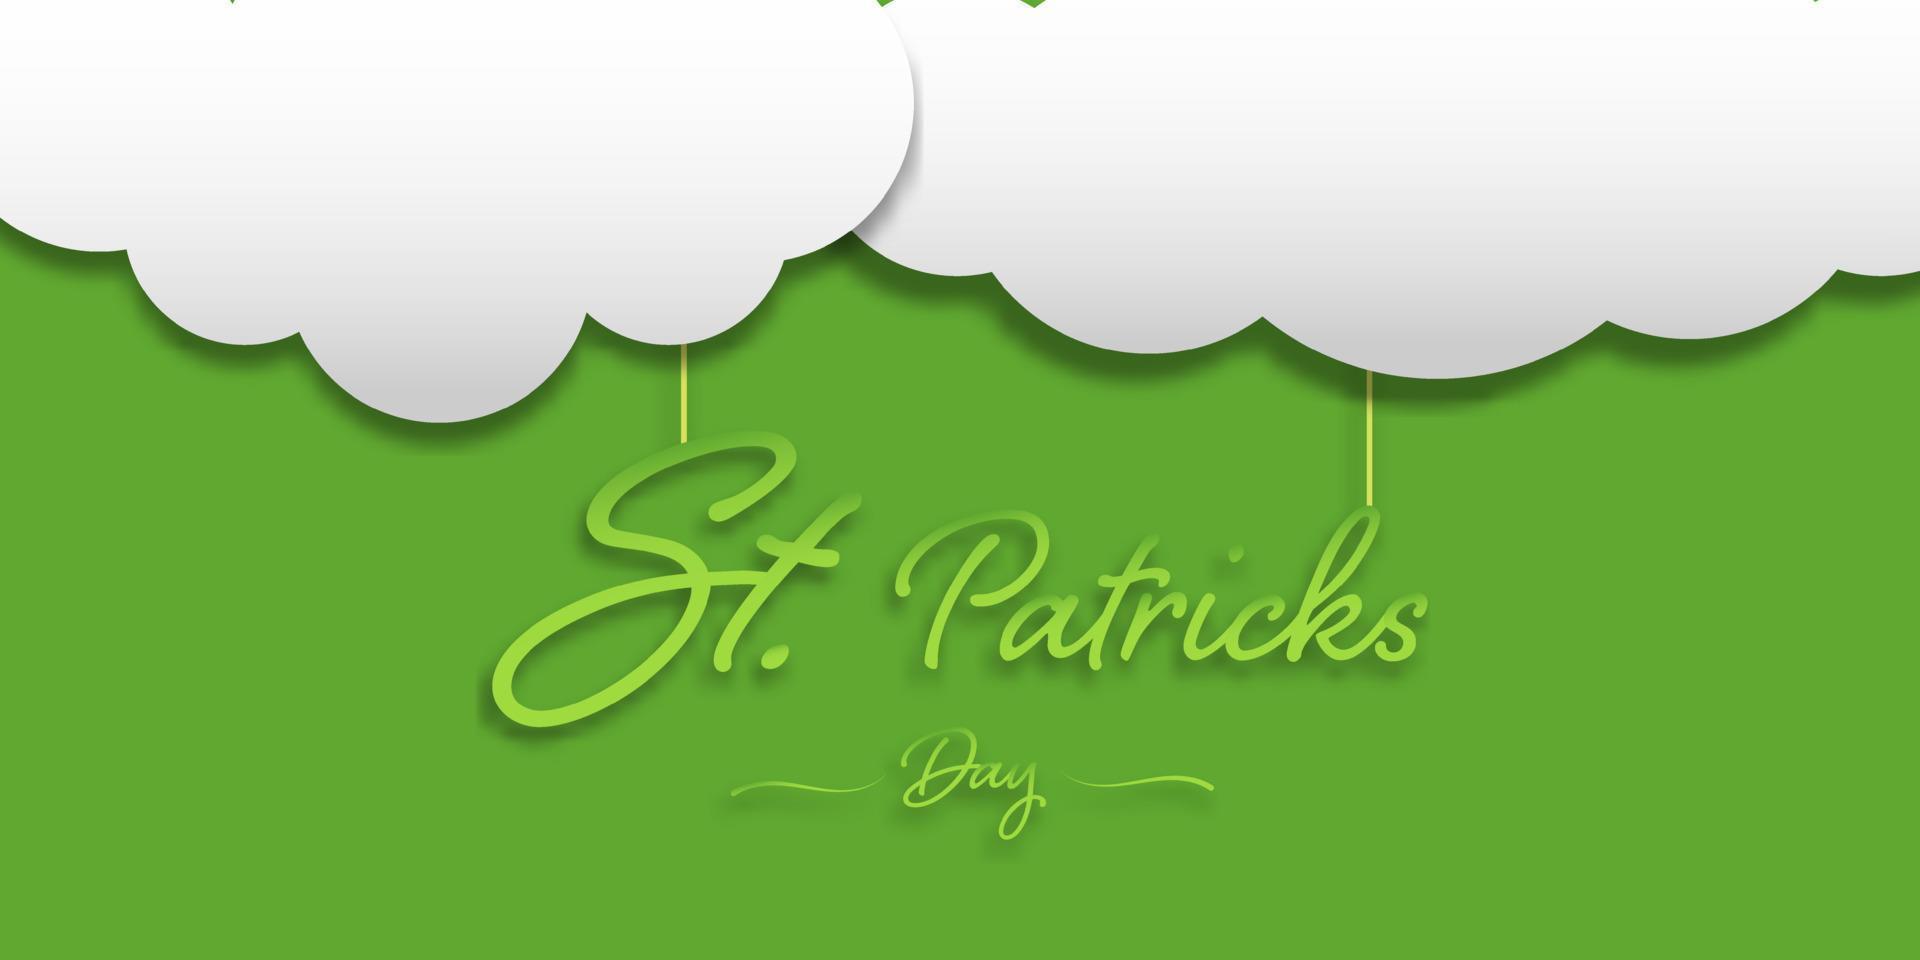 glad saint patrick's day hängande med ett vitt moln på grön bakgrund för banner, logotyp webbplats och kort. irländskt firande och festival. vektor